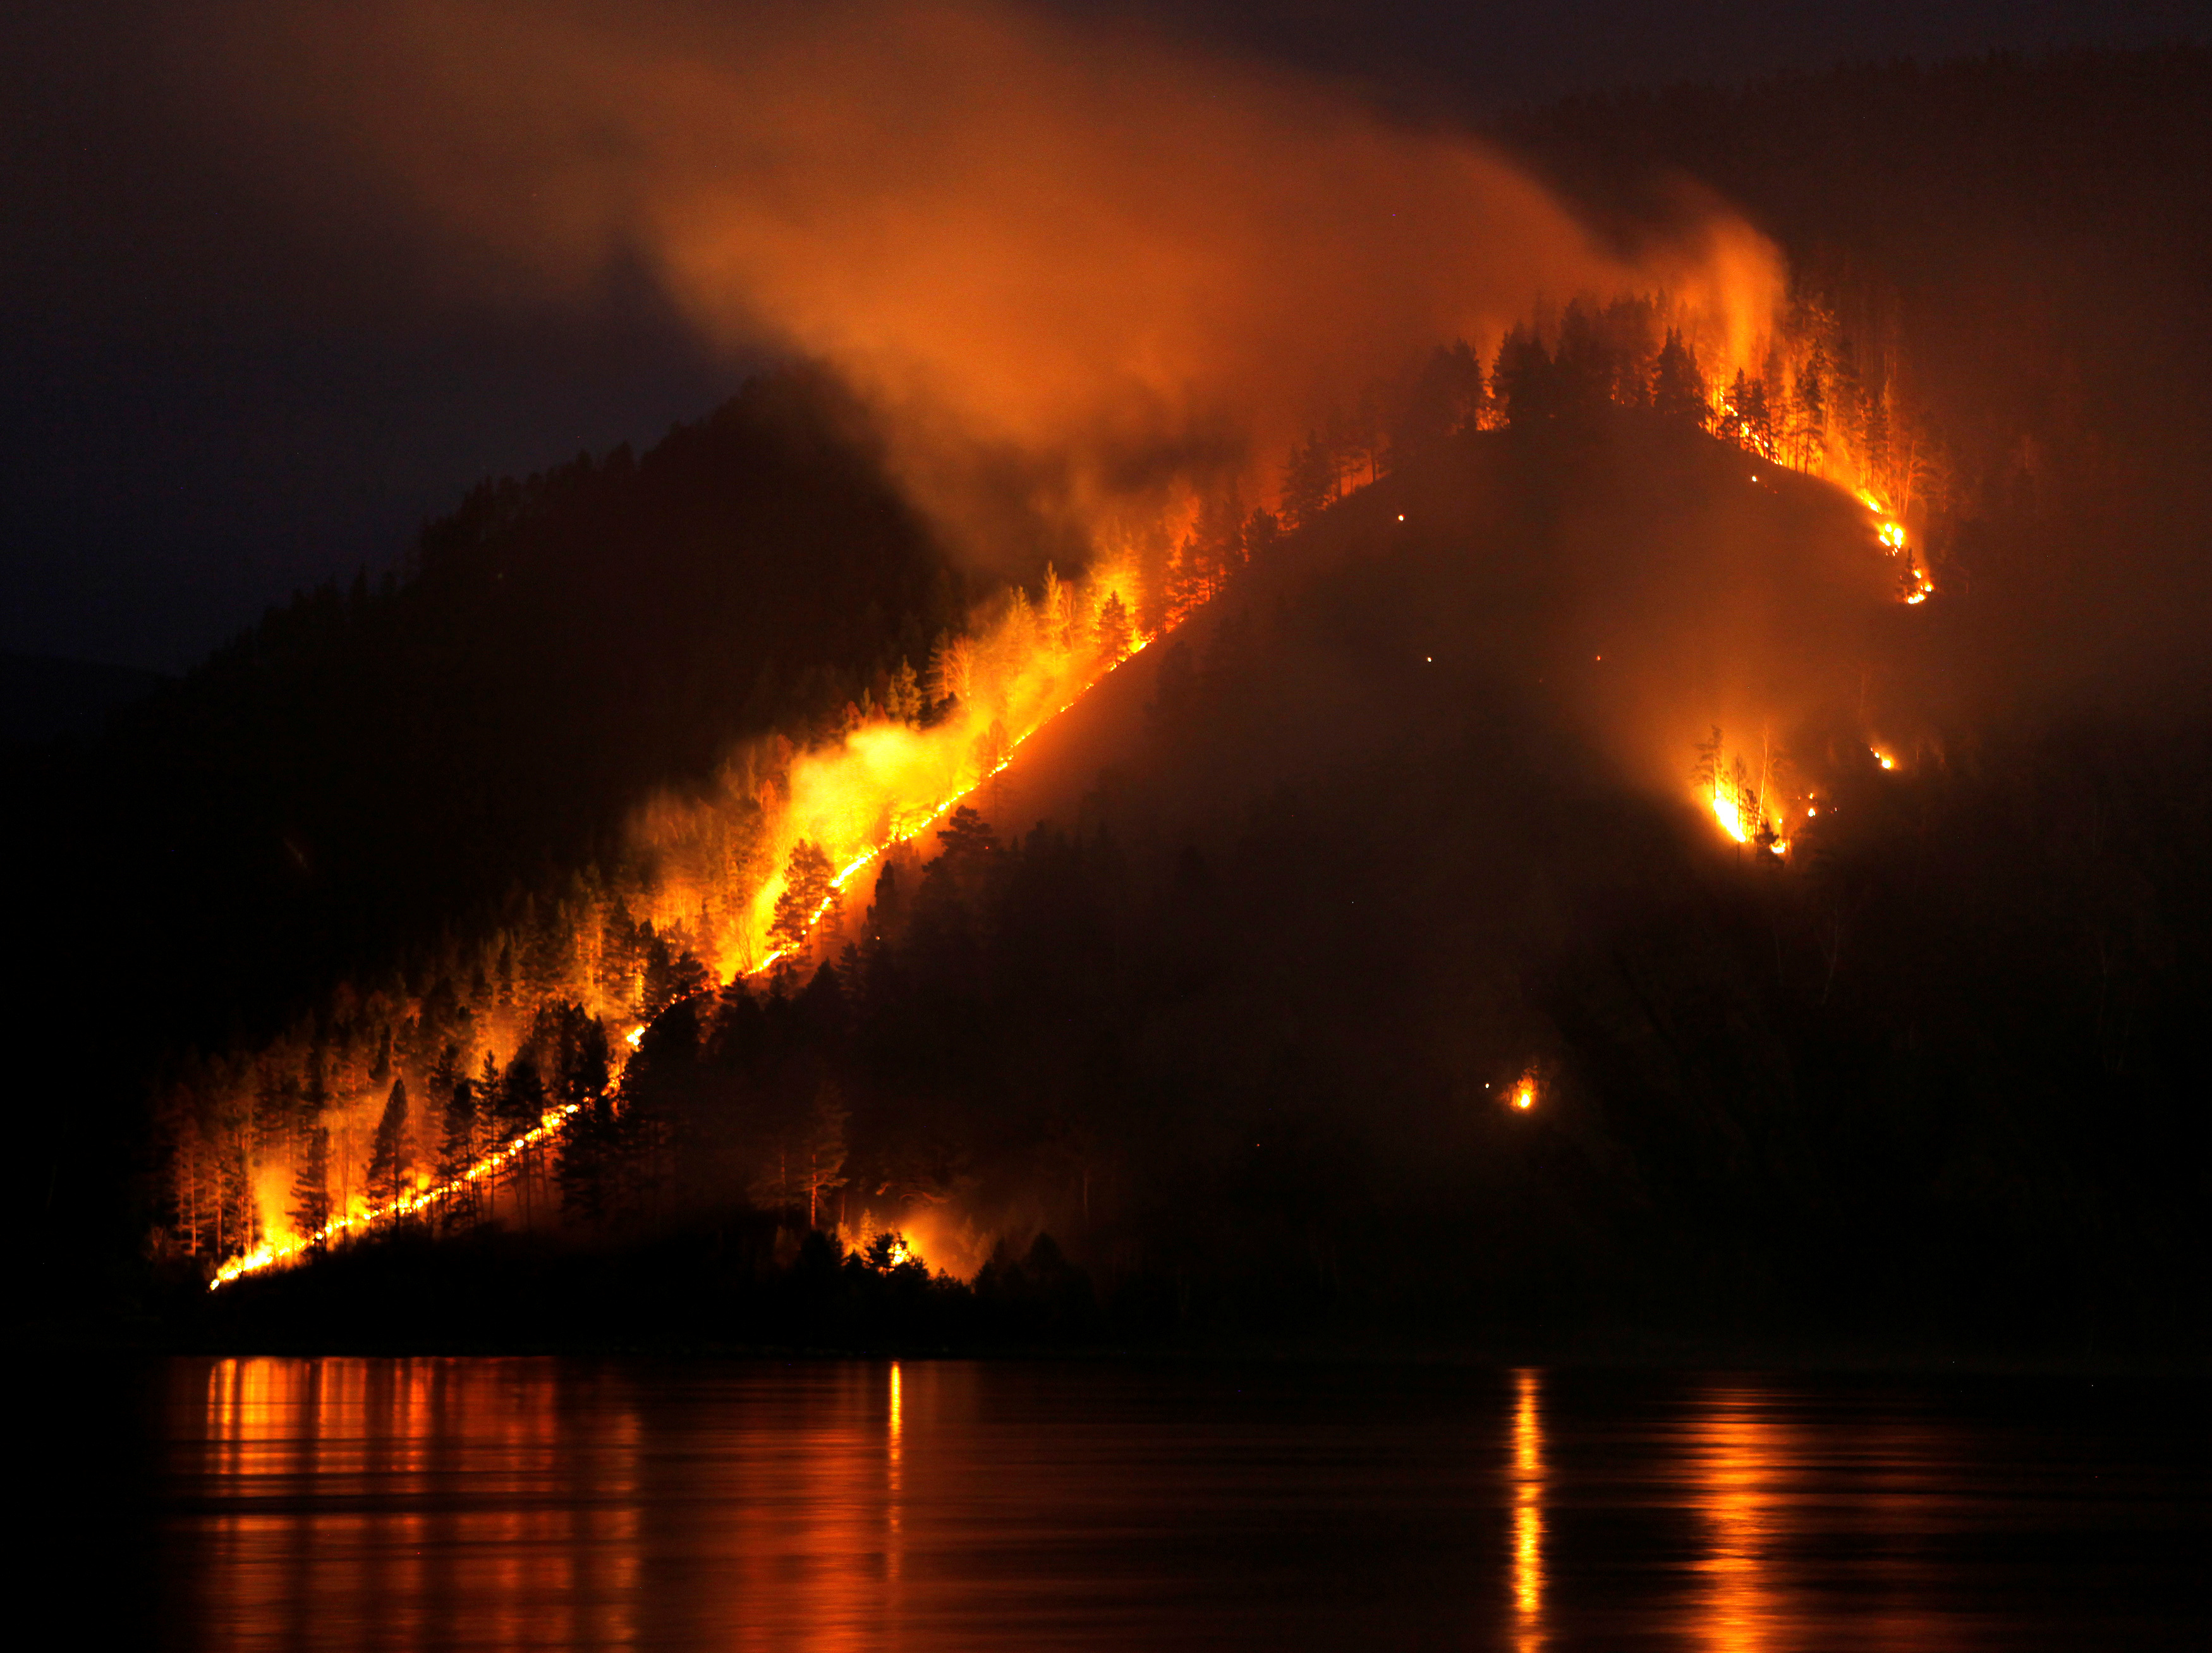 Σιβηρία: 232 φωτιές καίνε τα πάντα! Σε κατάσταση έκτακτης ανάγκης το Κρασνογιάρσκ και το Ιρκούτσκ – video